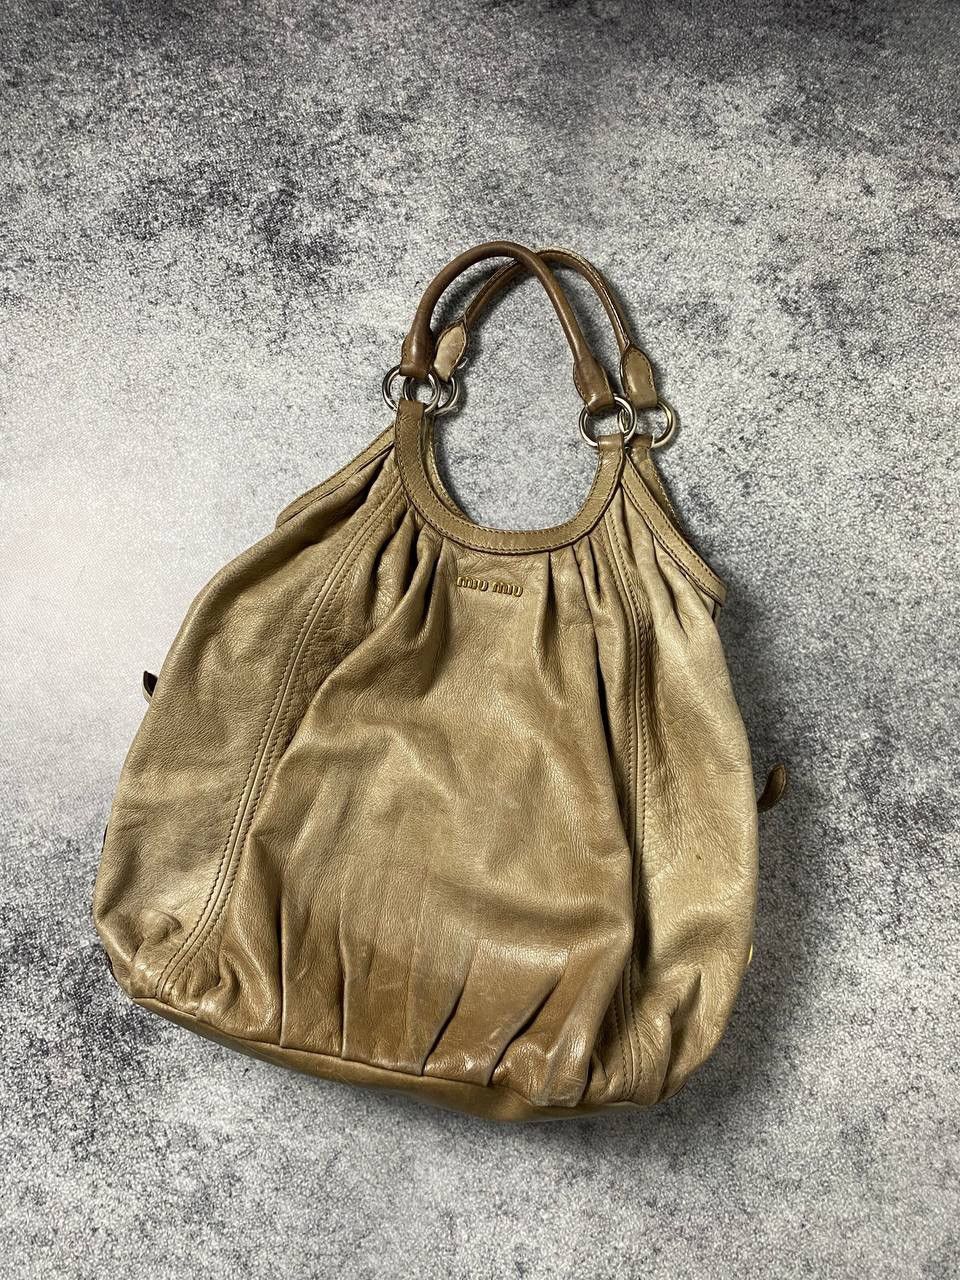 Miu Miu Vintage Bag | Grailed